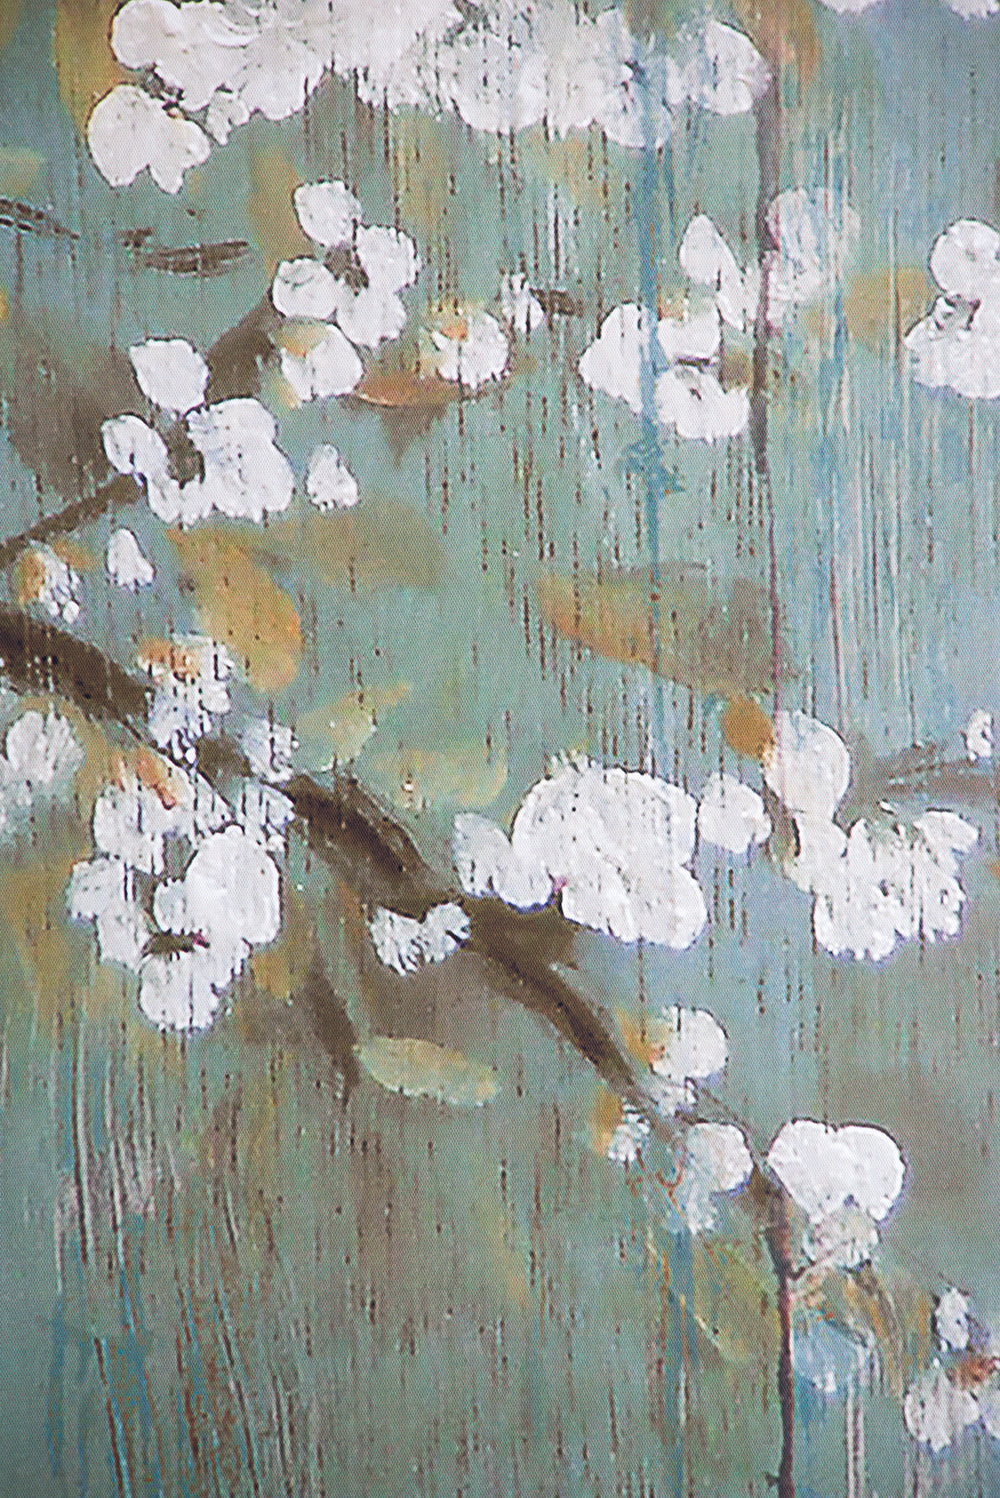 18.5" x 59" Saison White Cherry Blossom Canvas